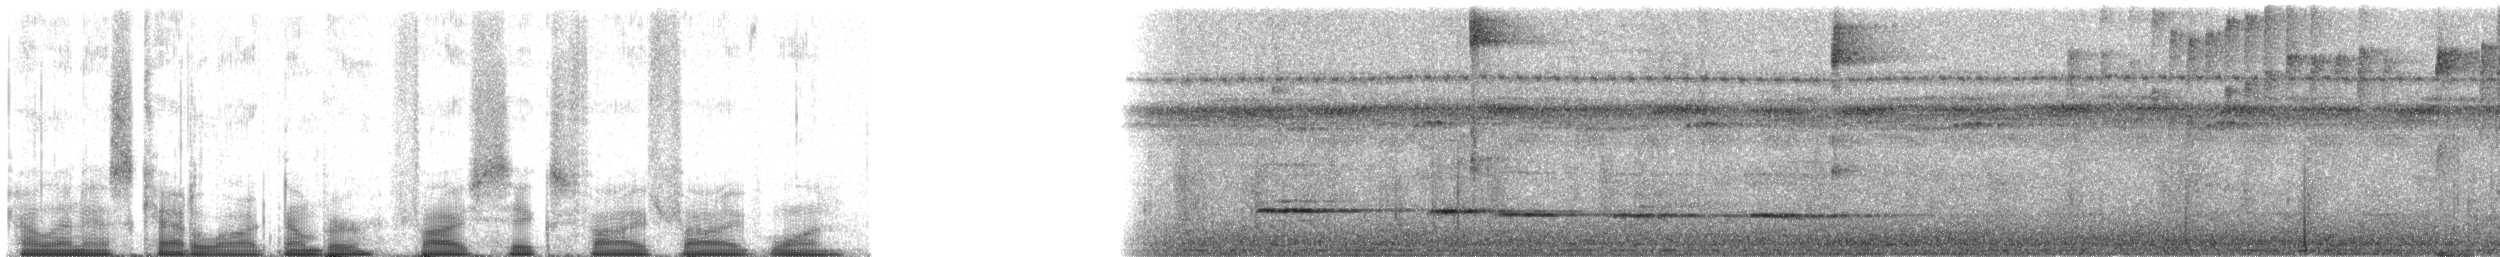 Turuncu Gagalı Çalı Serçesi [aurantiirostris grubu] - ML56551